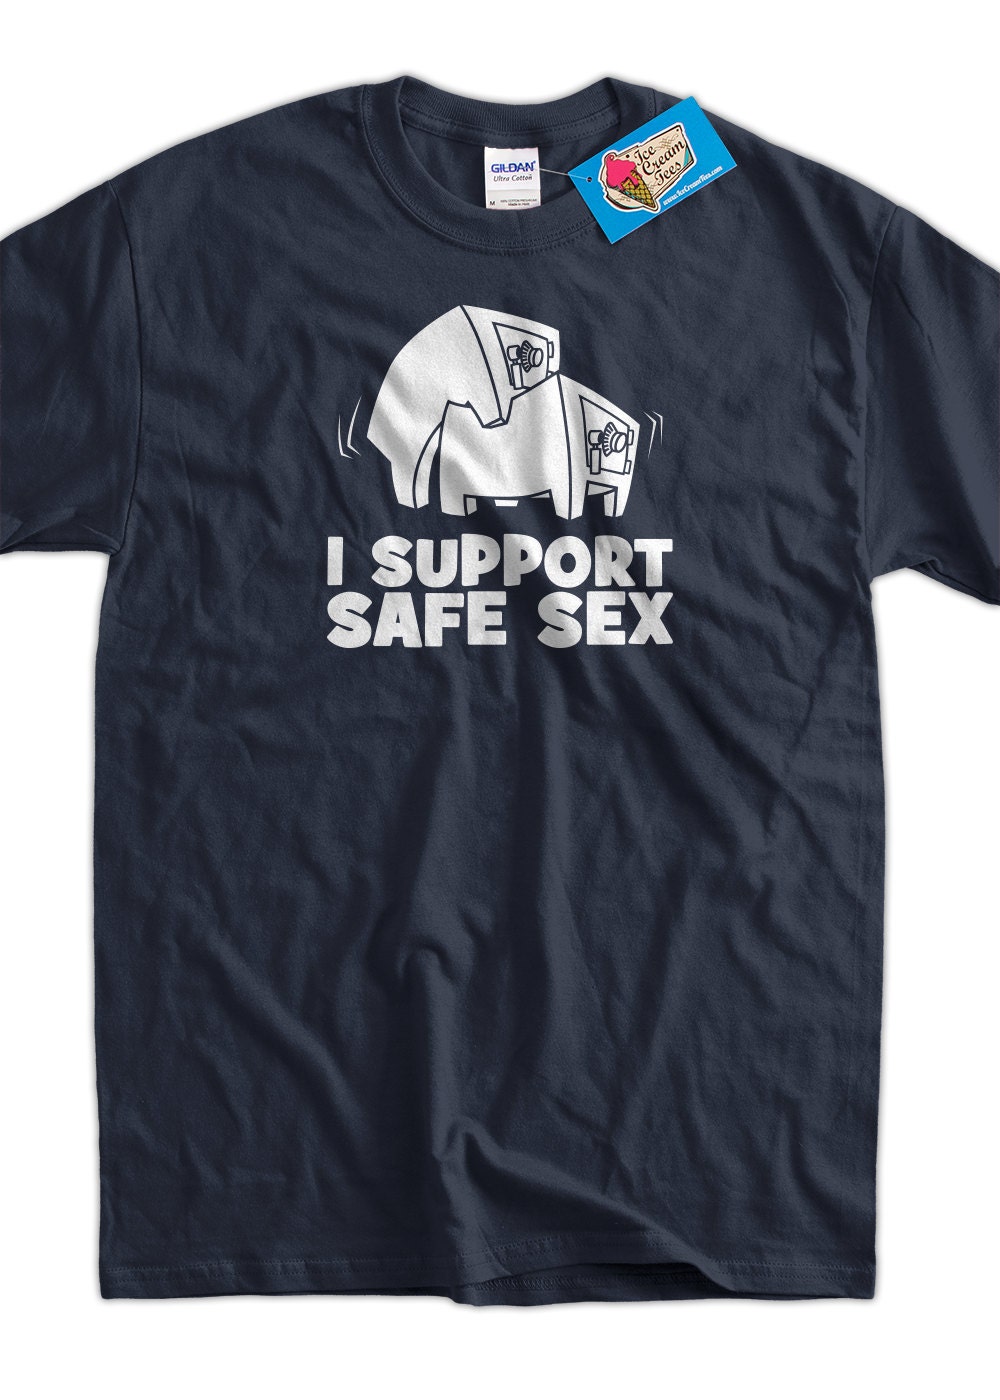 I Support Safe Sex Screen Printed T Shirt Tee Shirt T Shirt